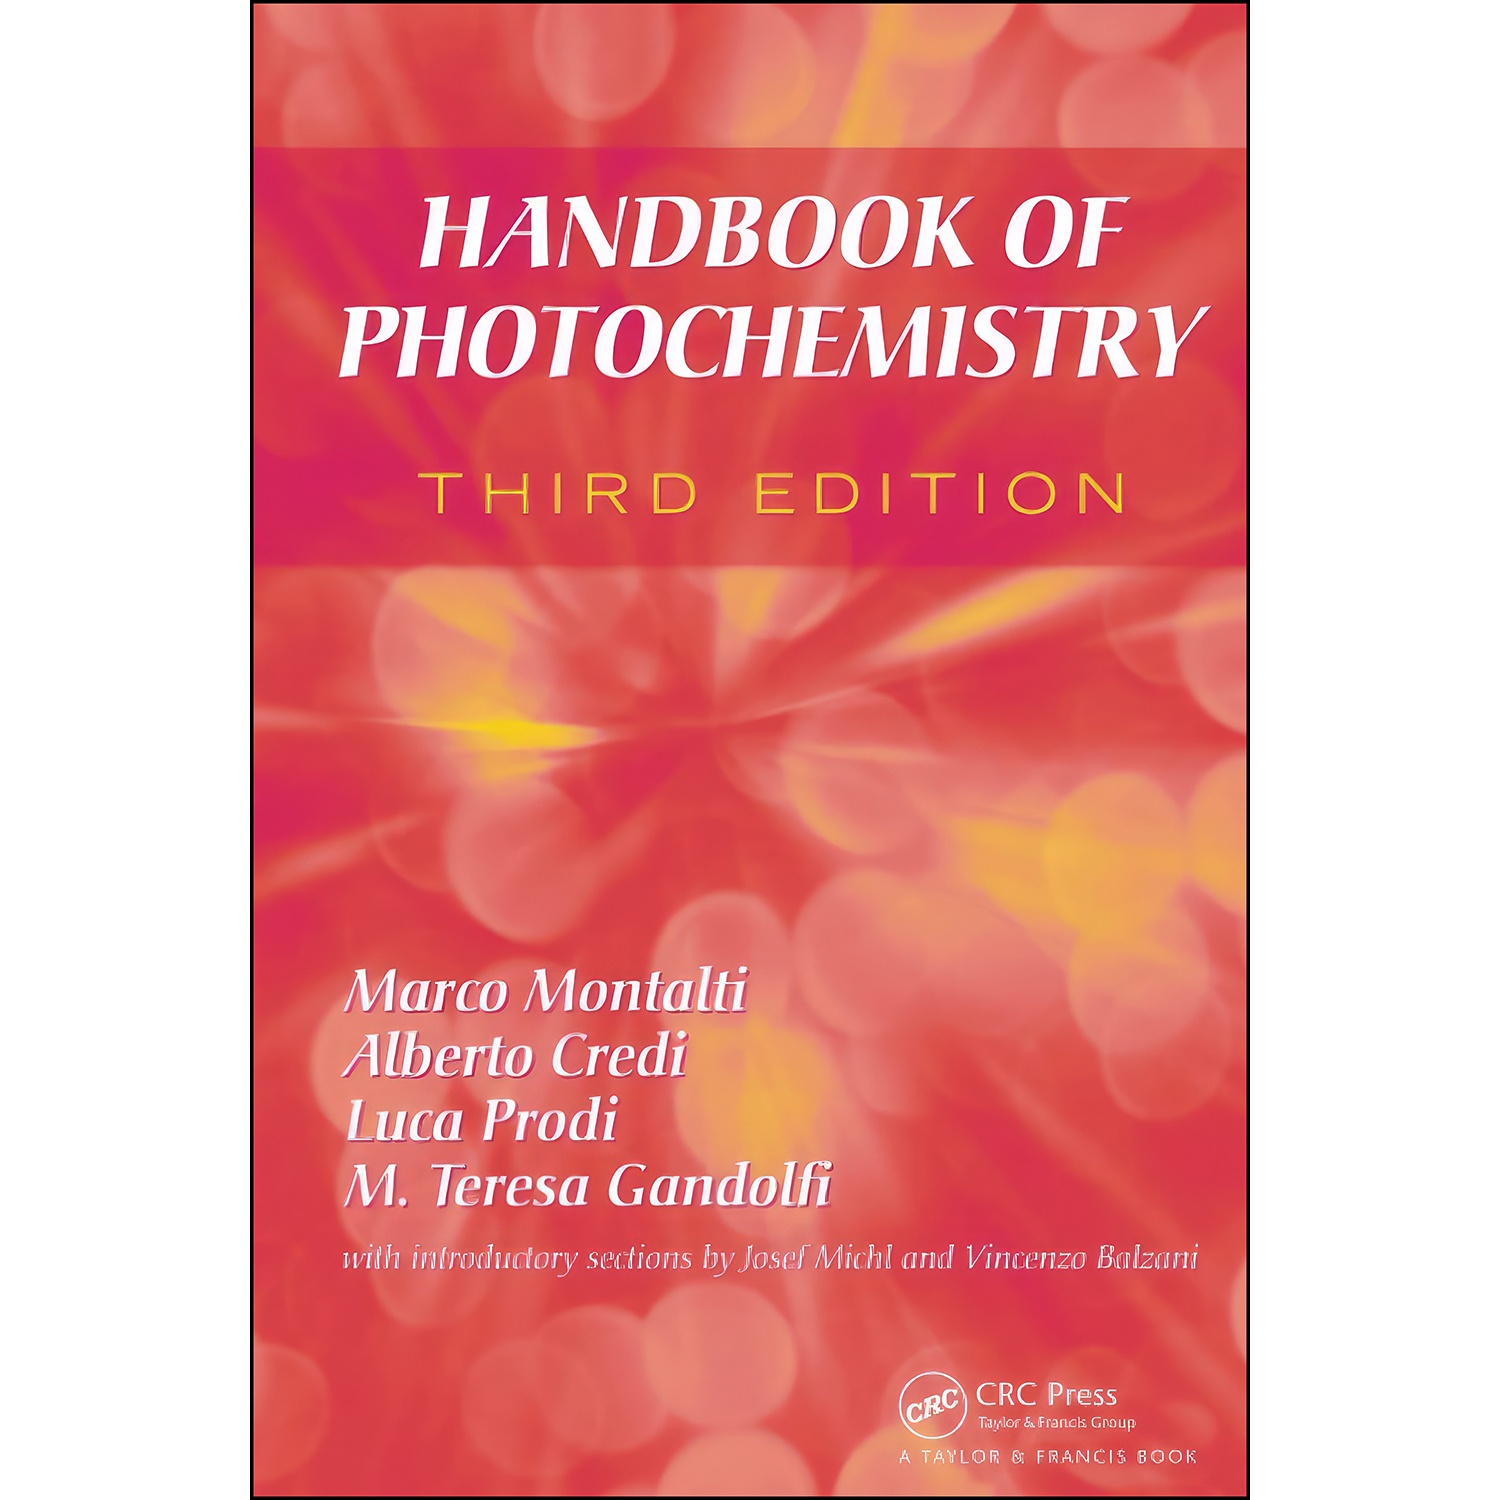 کتاب Handbook of Photochemistry اثر Marco Montalti انتشارات CRC Press